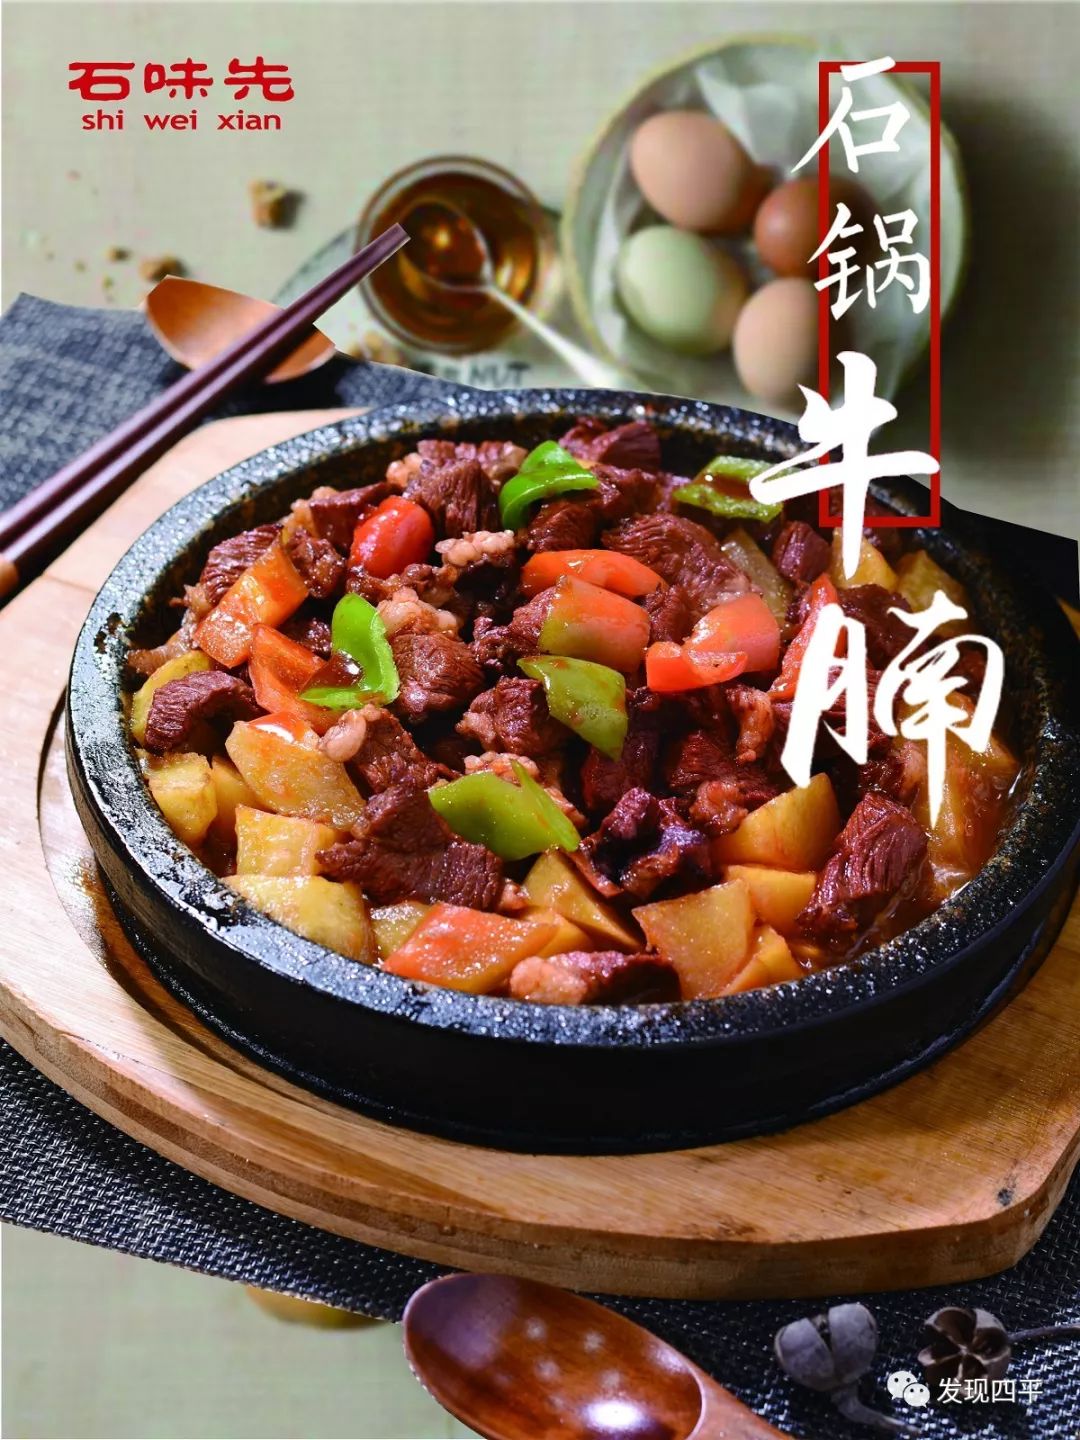 石锅菜14种 菜品图片